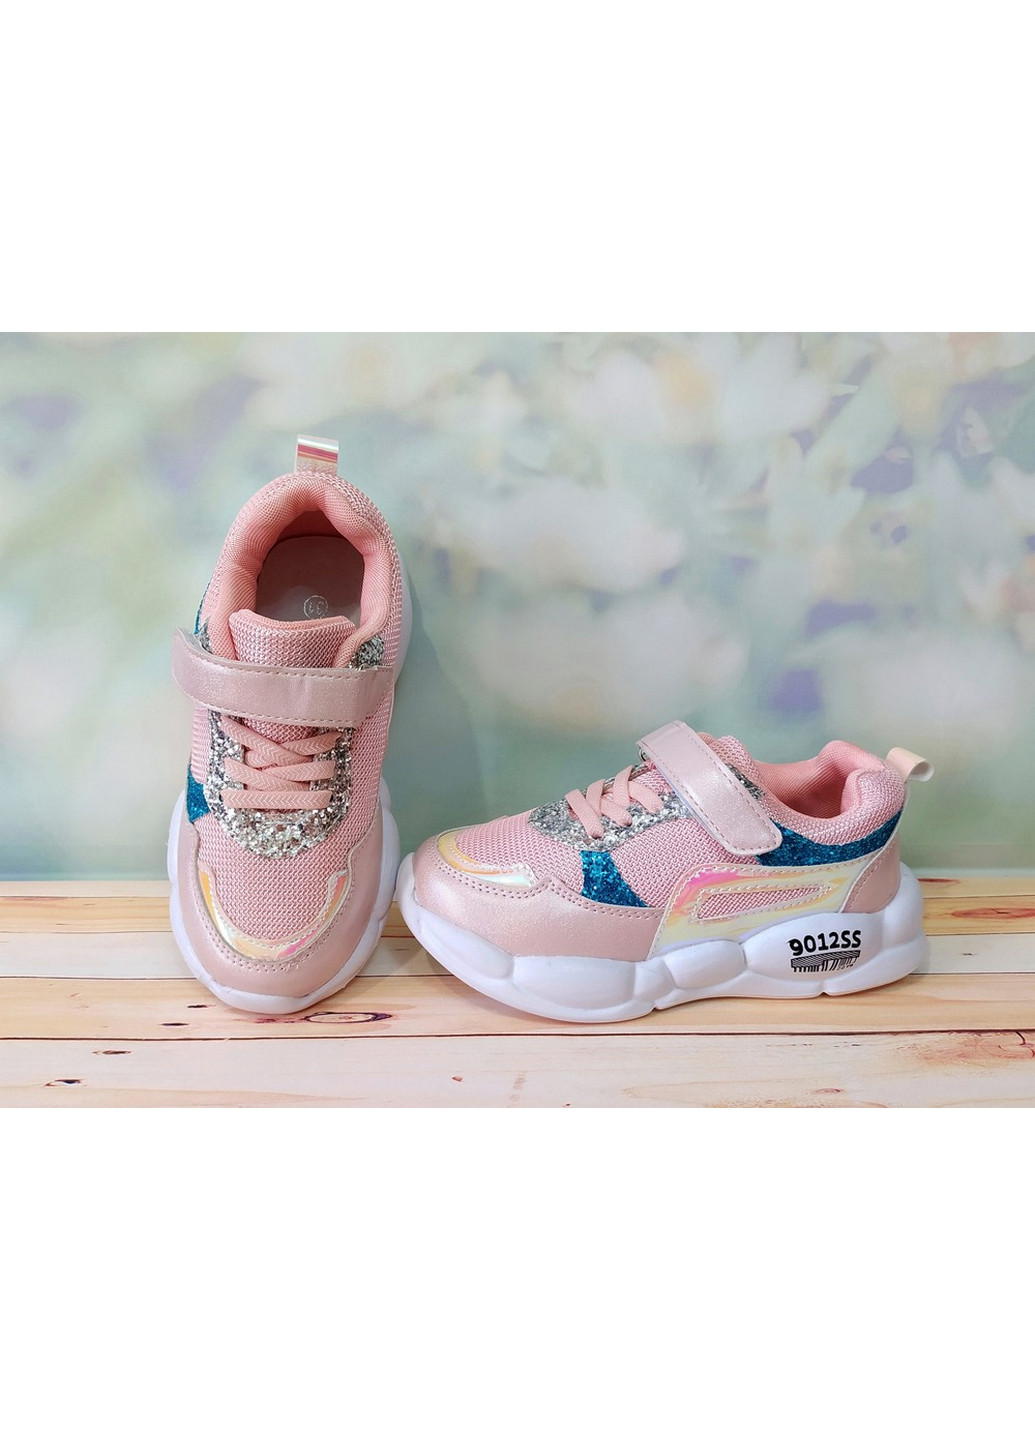 Розовые демисезонные кроссовки для девочки BBT